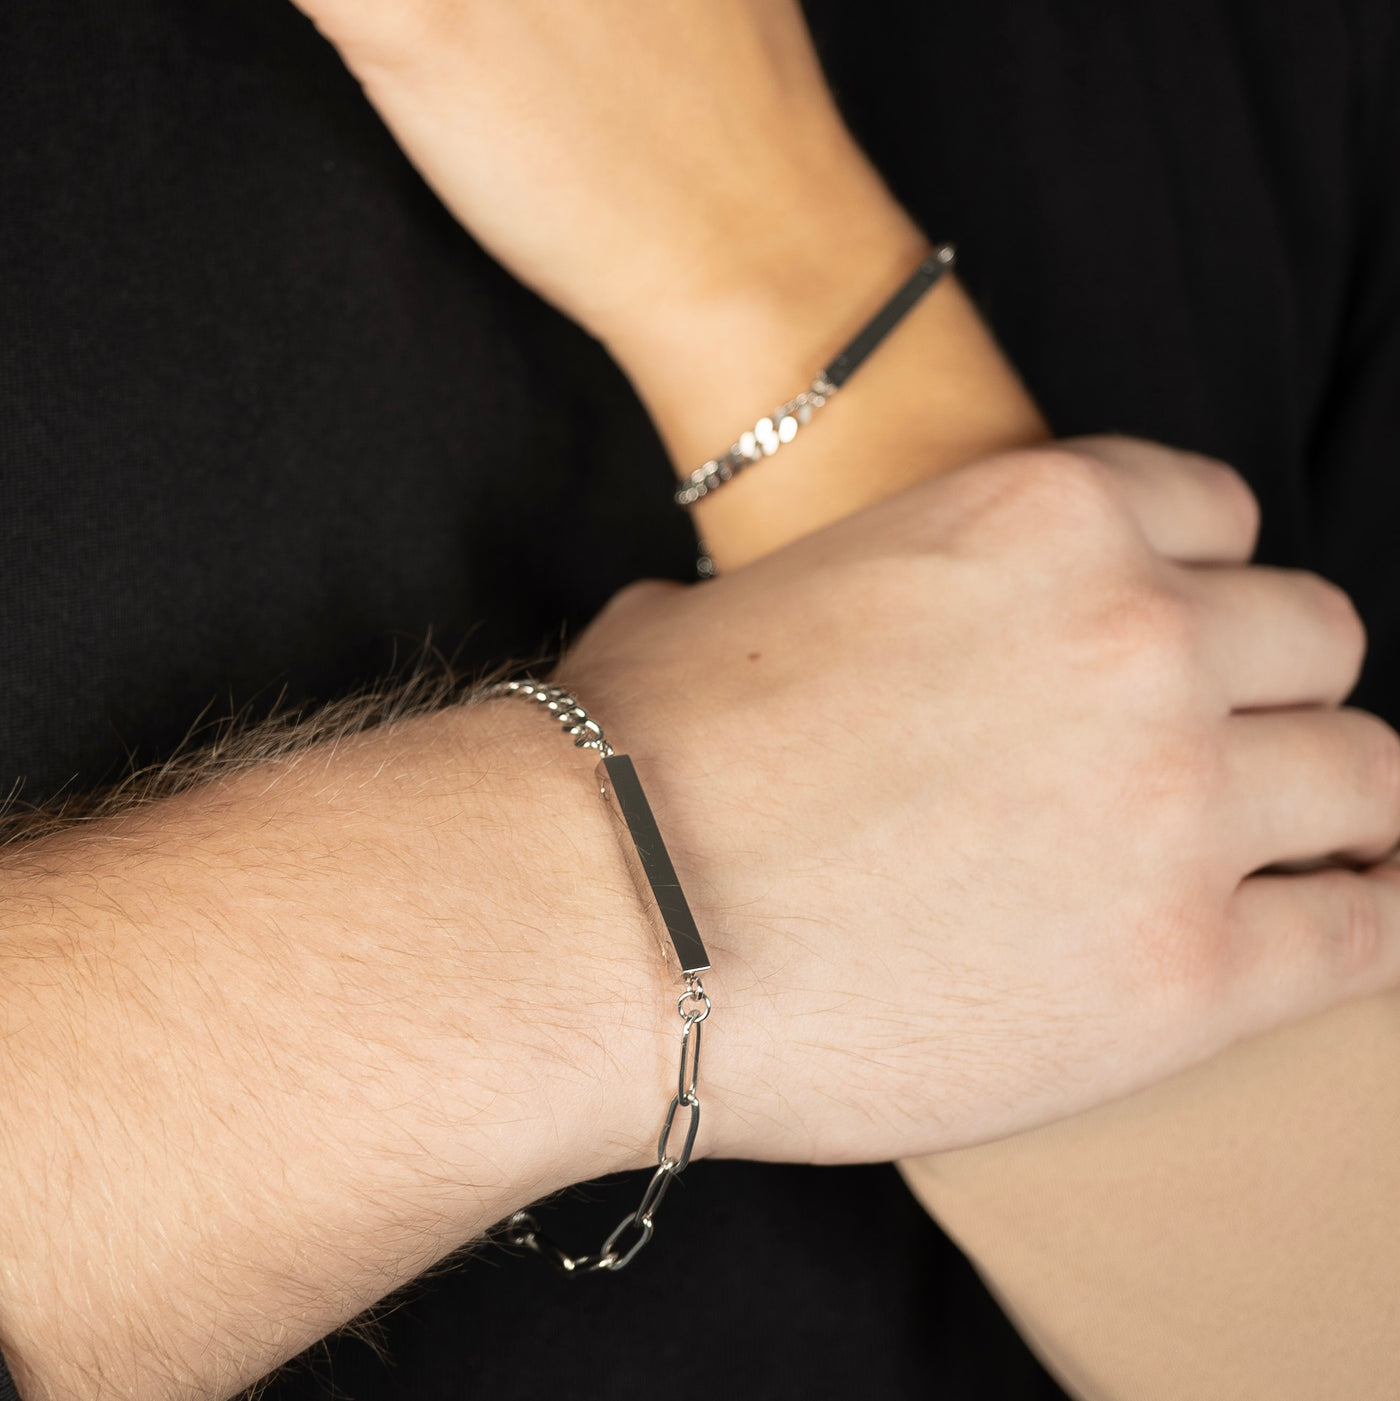 Partner bracelet Brace with engraving &amp; magnet